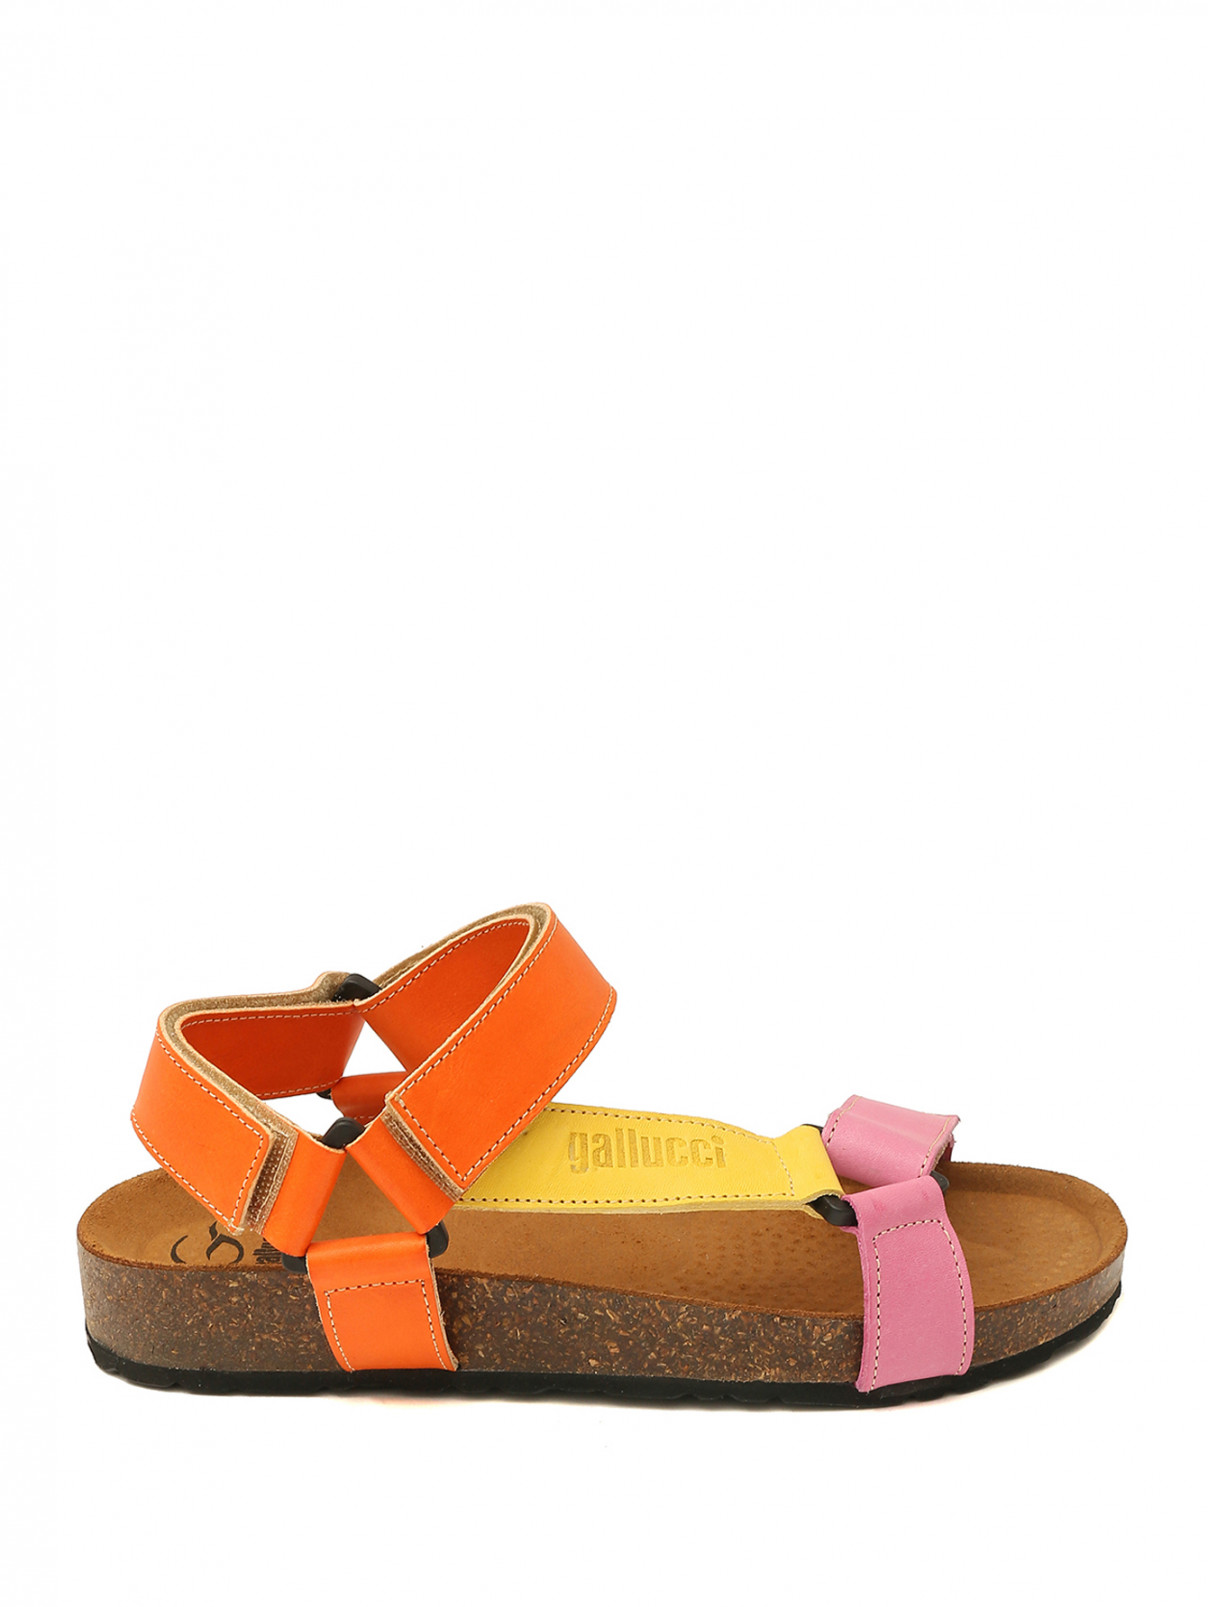 Кожаные сандалии на липучке Gallucci  –  Обтравка1  – Цвет:  Оранжевый